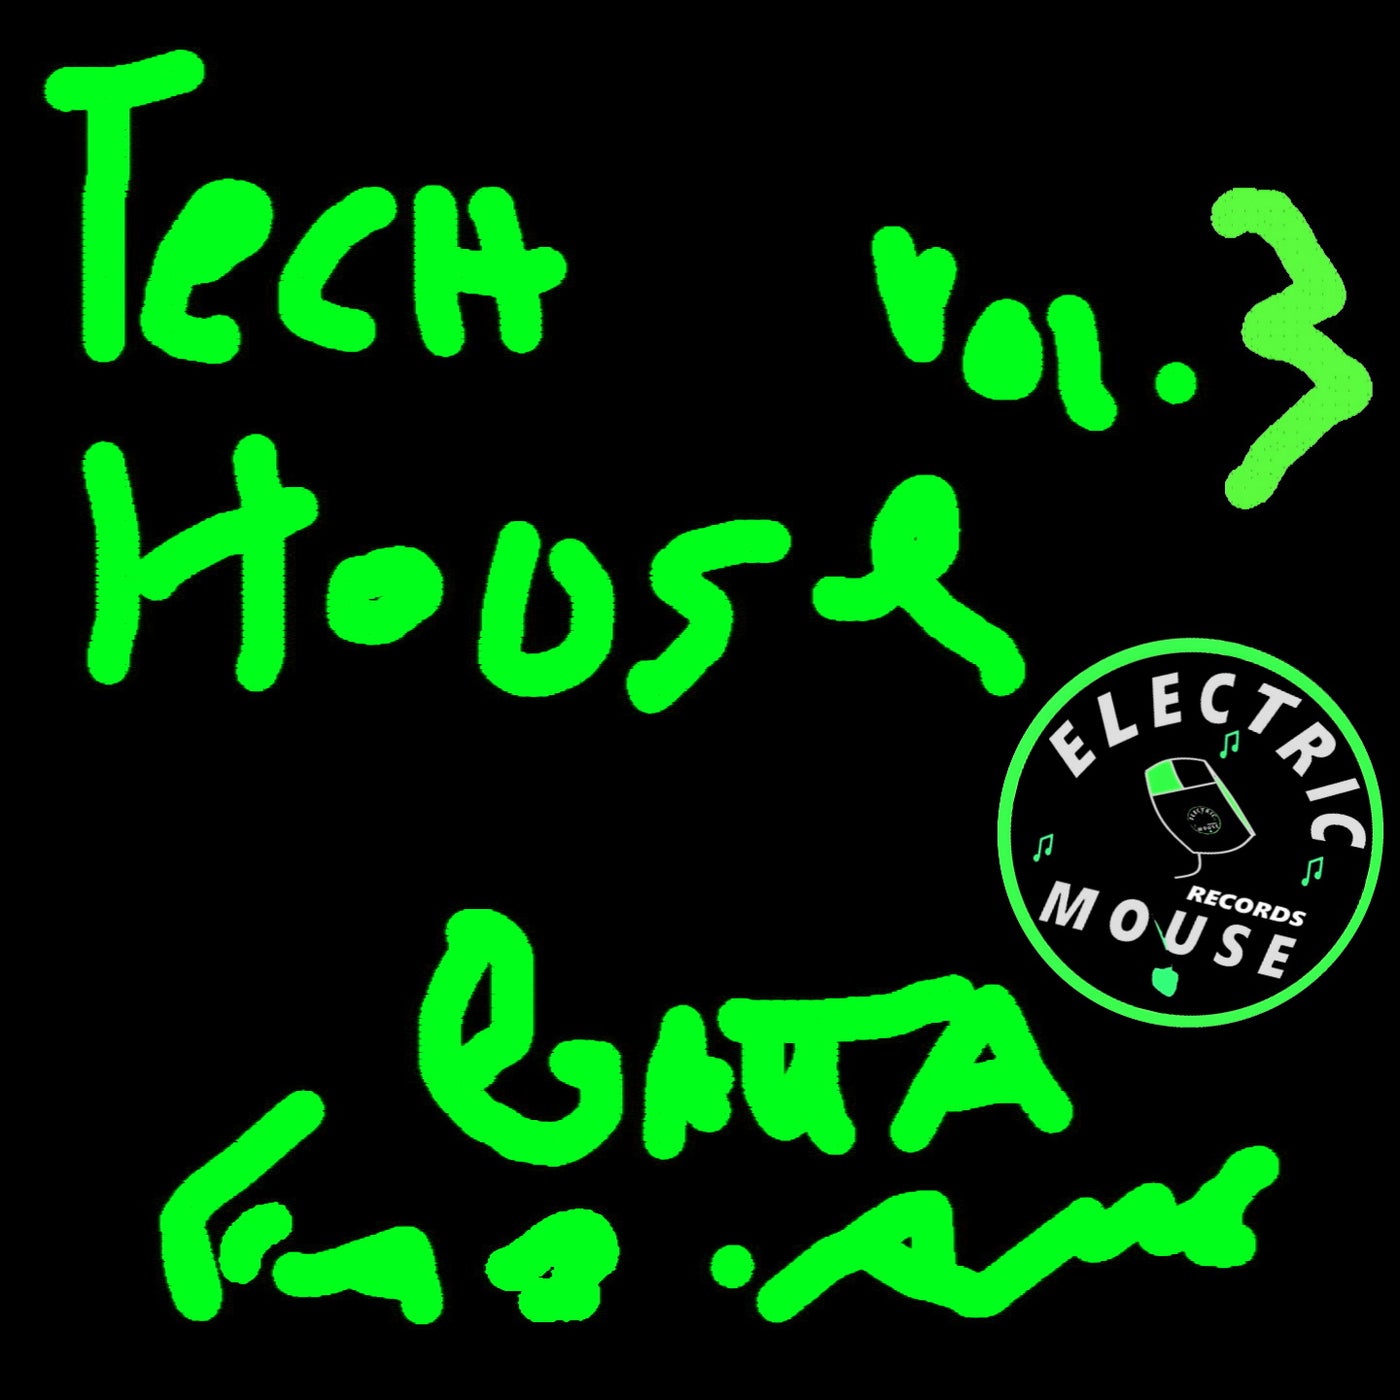 Tech House, Vol.3